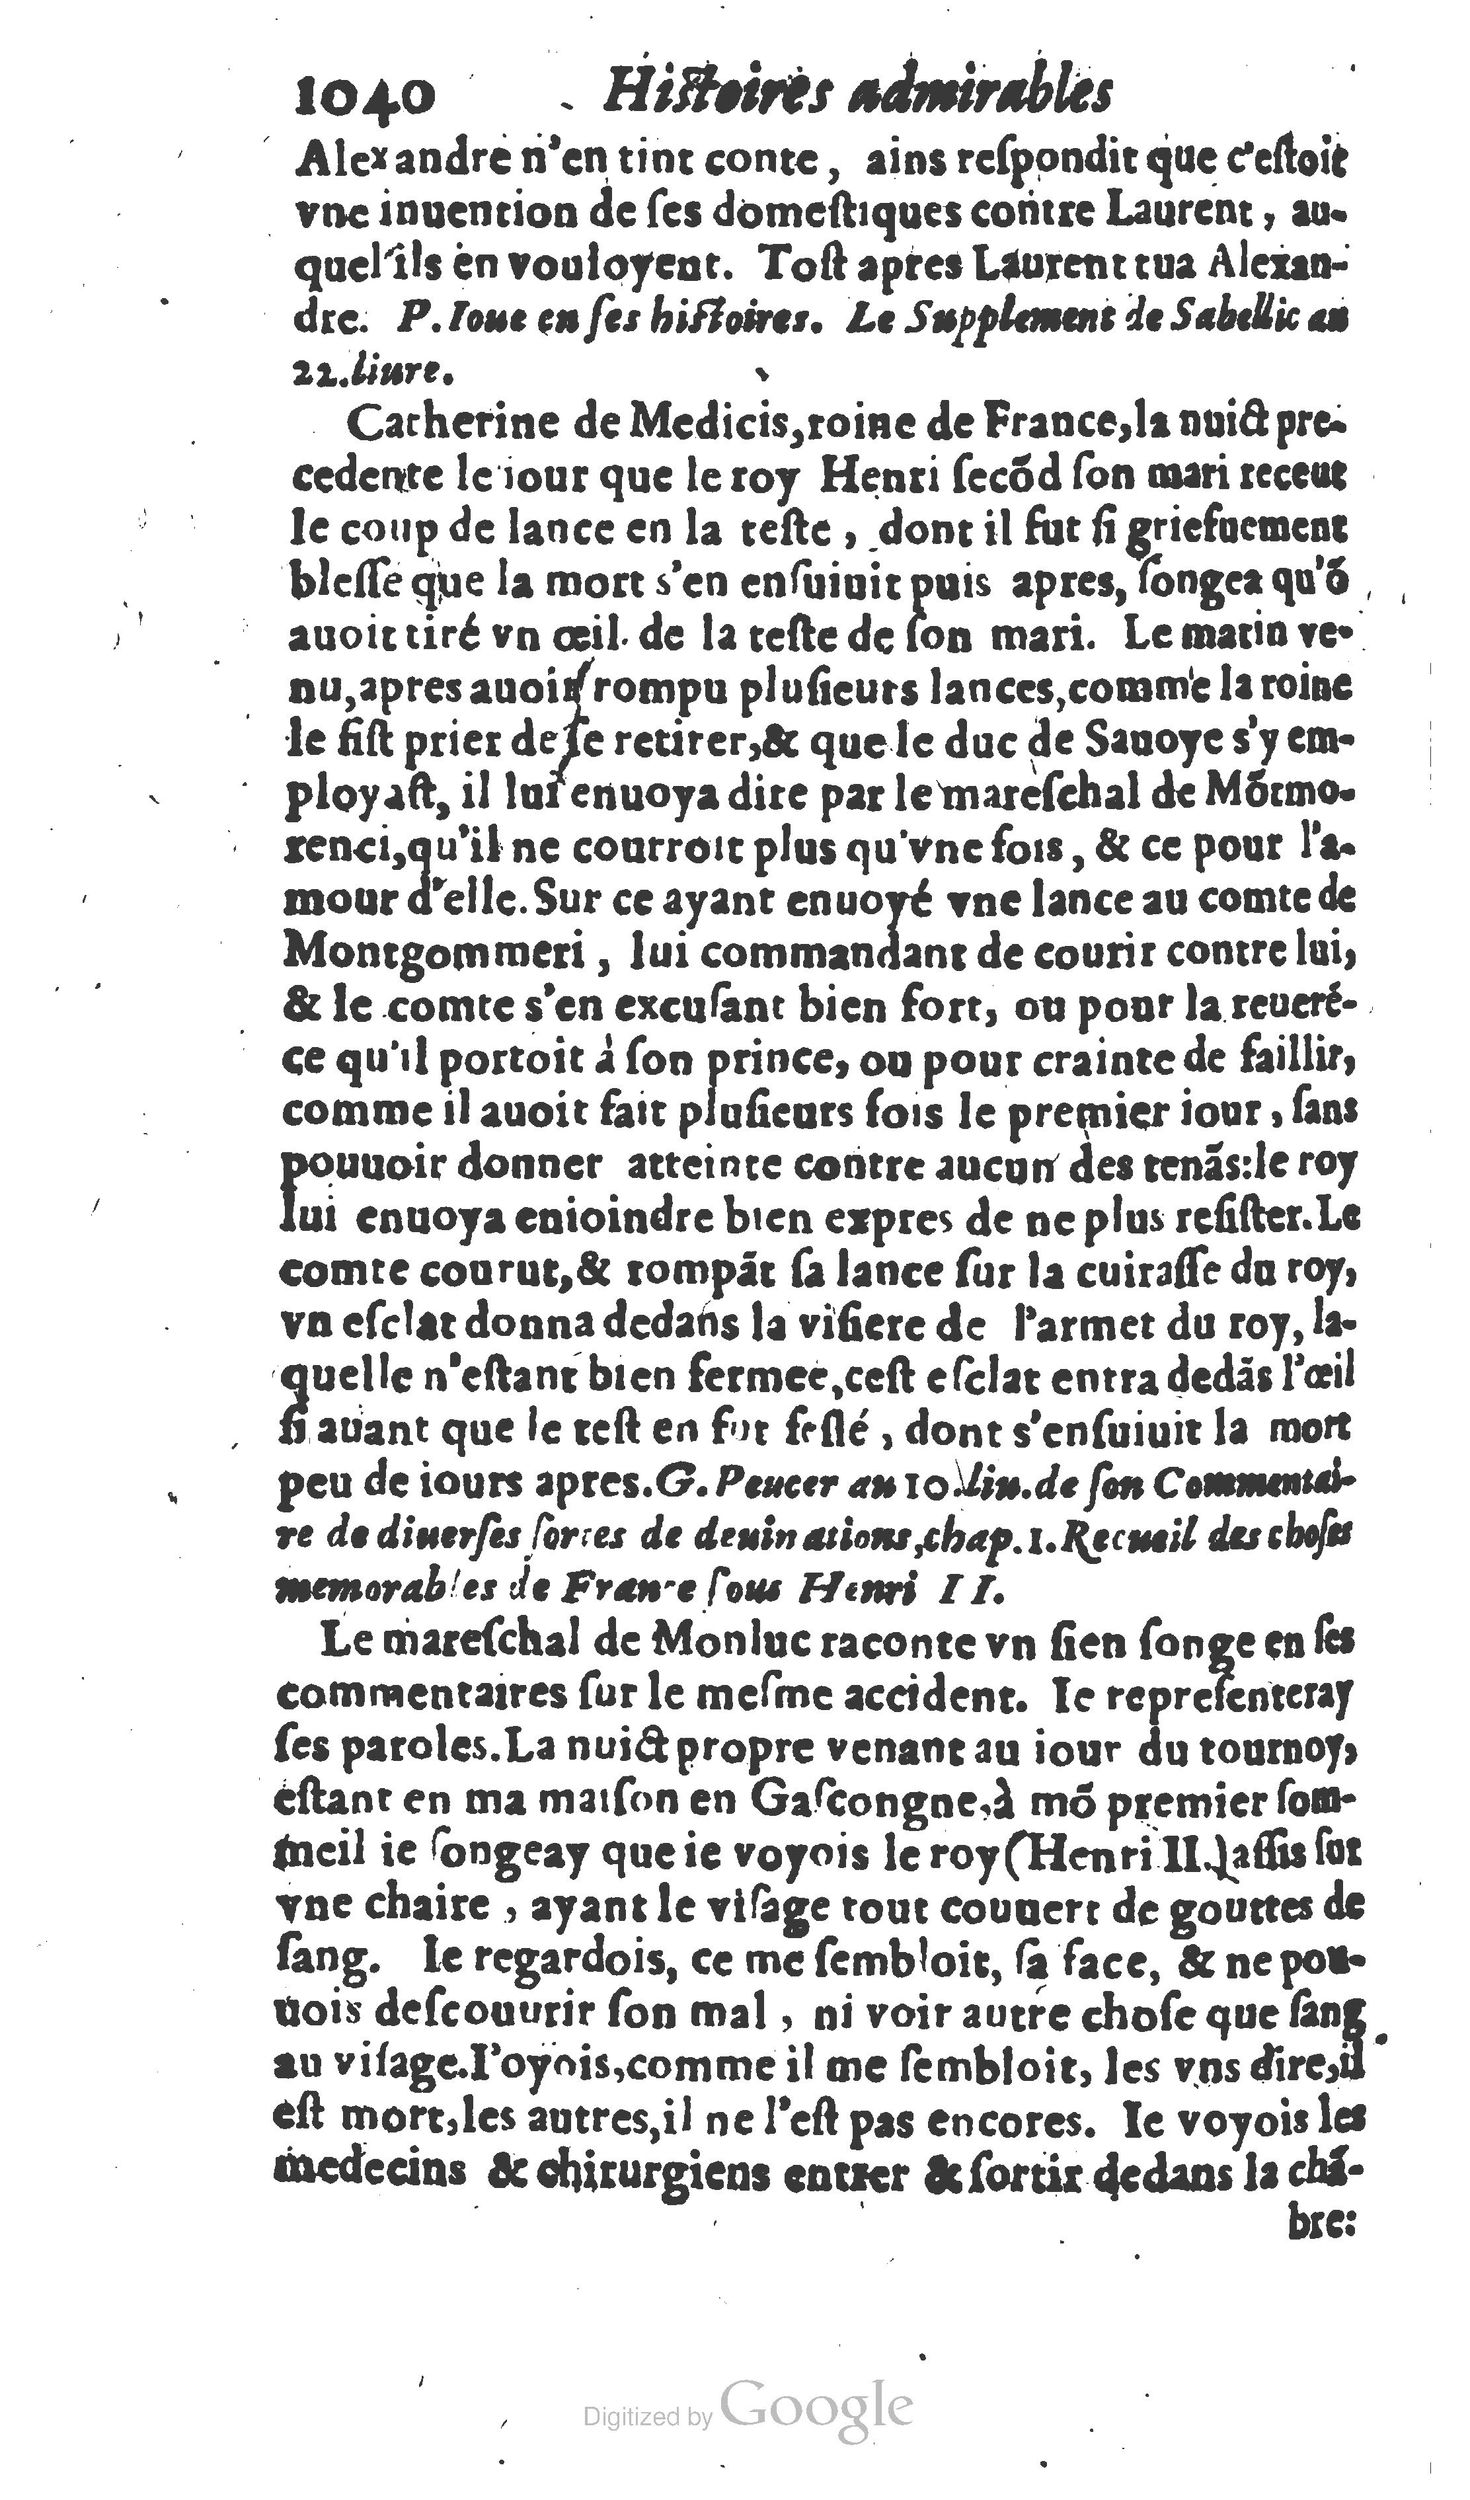 1610 Trésor d’histoires admirables et mémorables de nostre temps Marceau Princeton_Page_1061.jpg